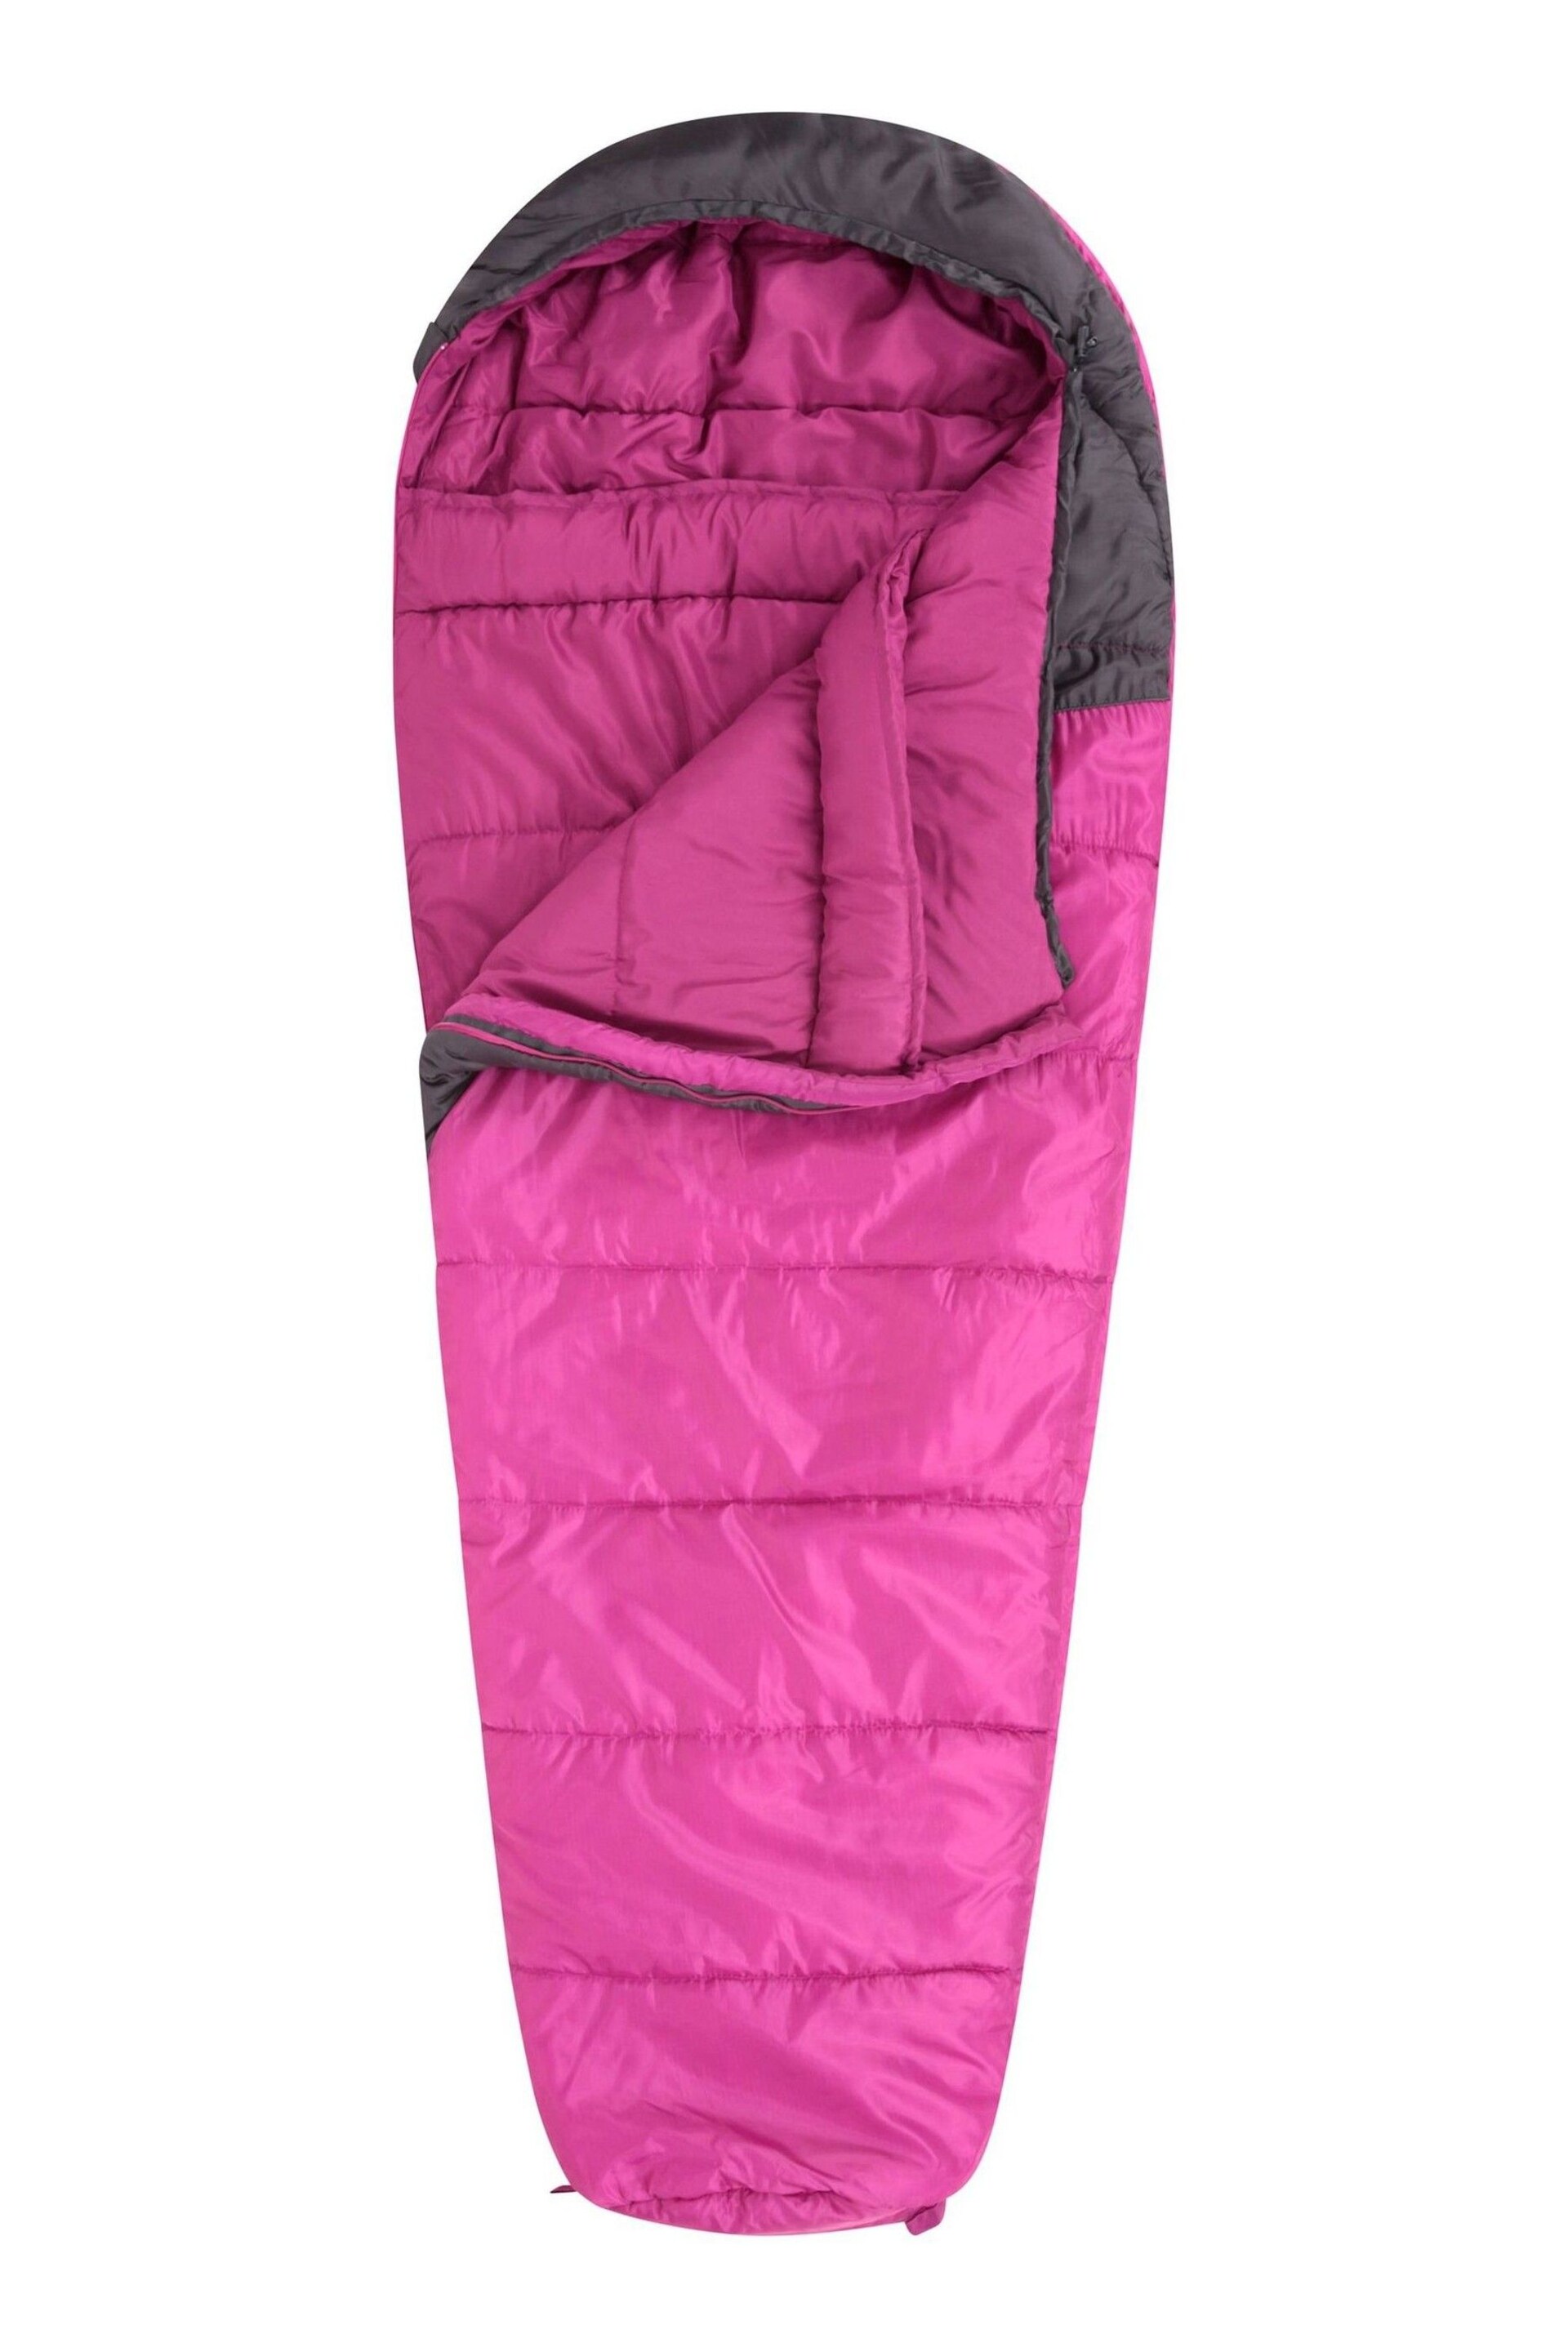 Mountain Warehouse Pink Summit 250 Sleeping Bag - Image 4 of 5